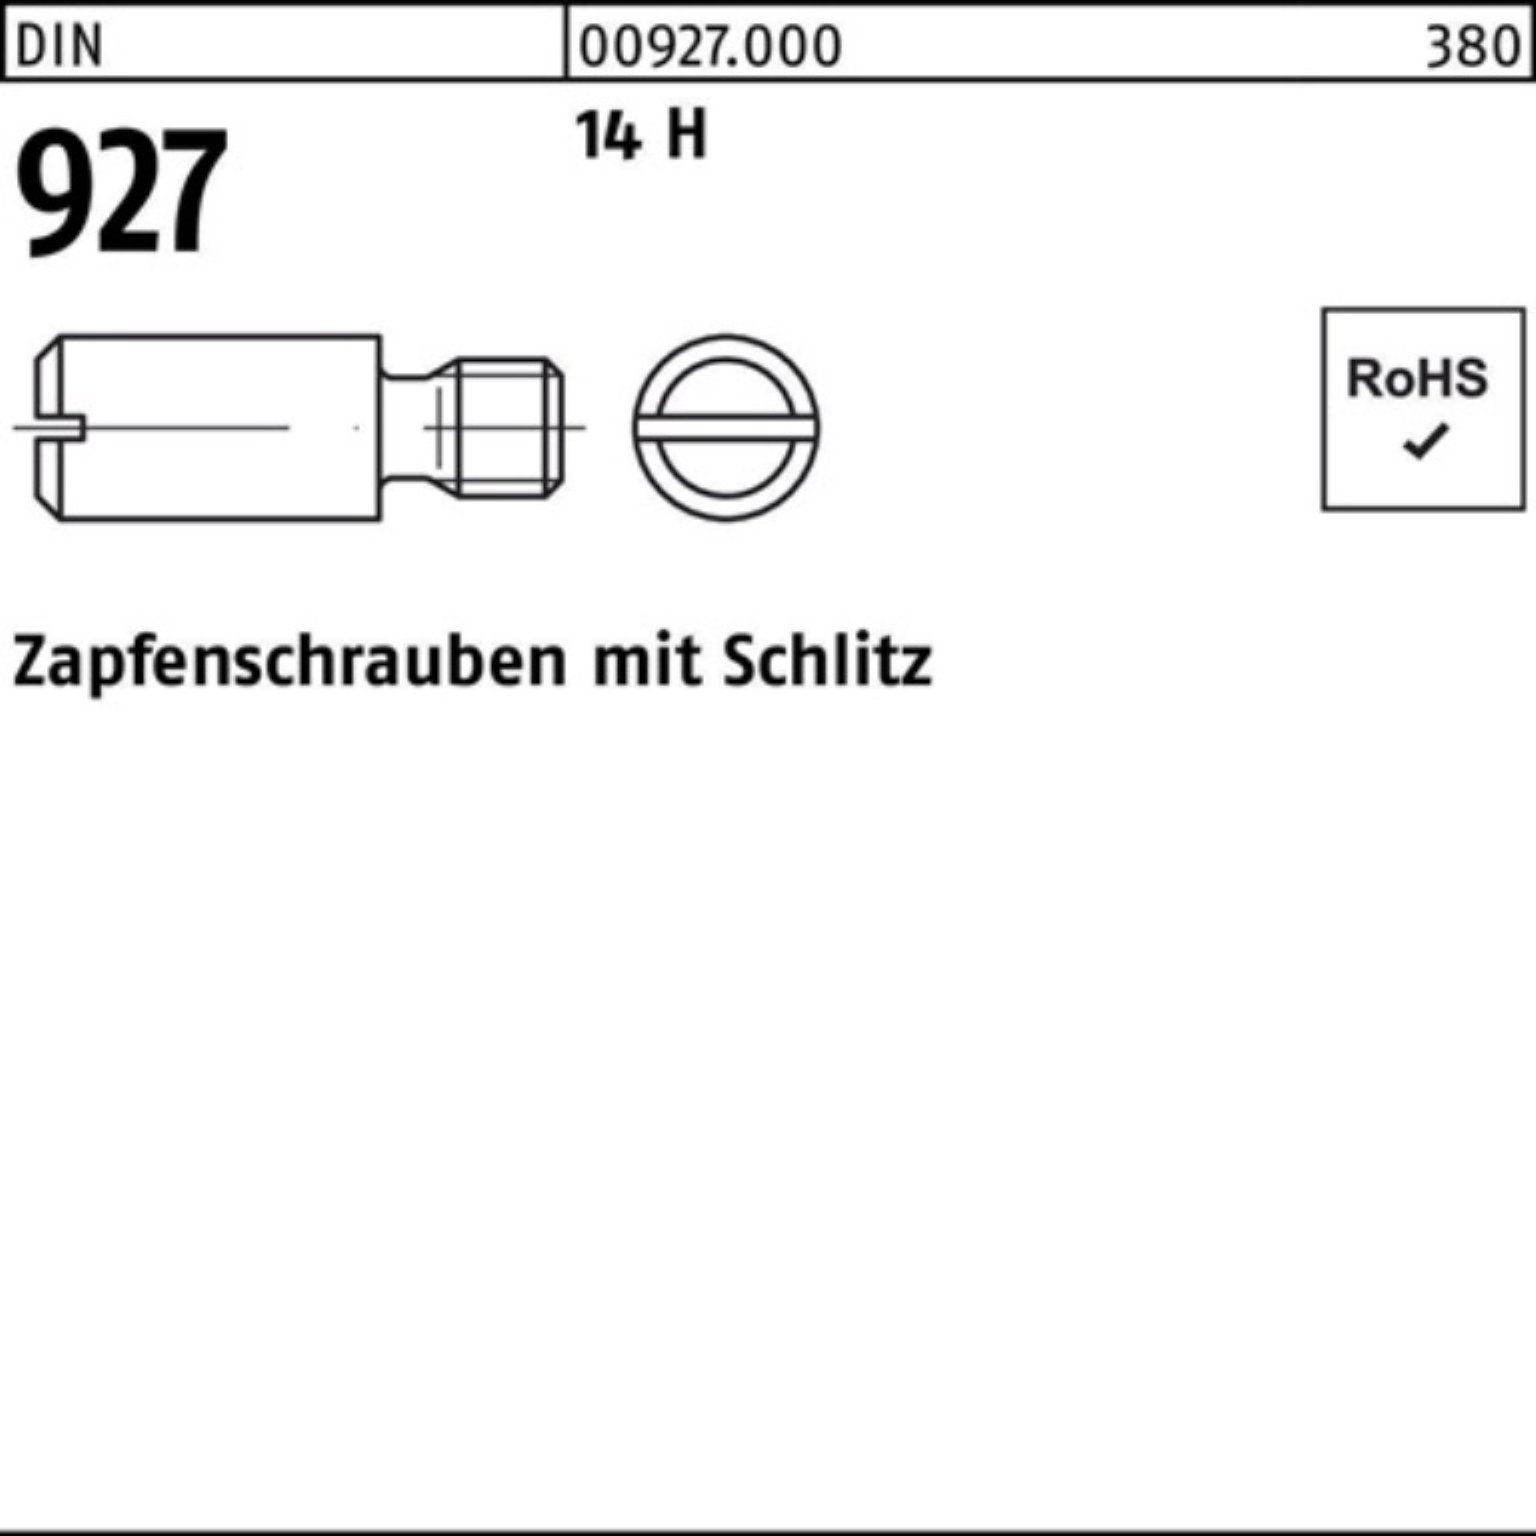 Reyher Schraube 100er 927 DIN H Pack 14 DIN 100 Schlitz M3x 5 Zapfenschraube 92 Stück